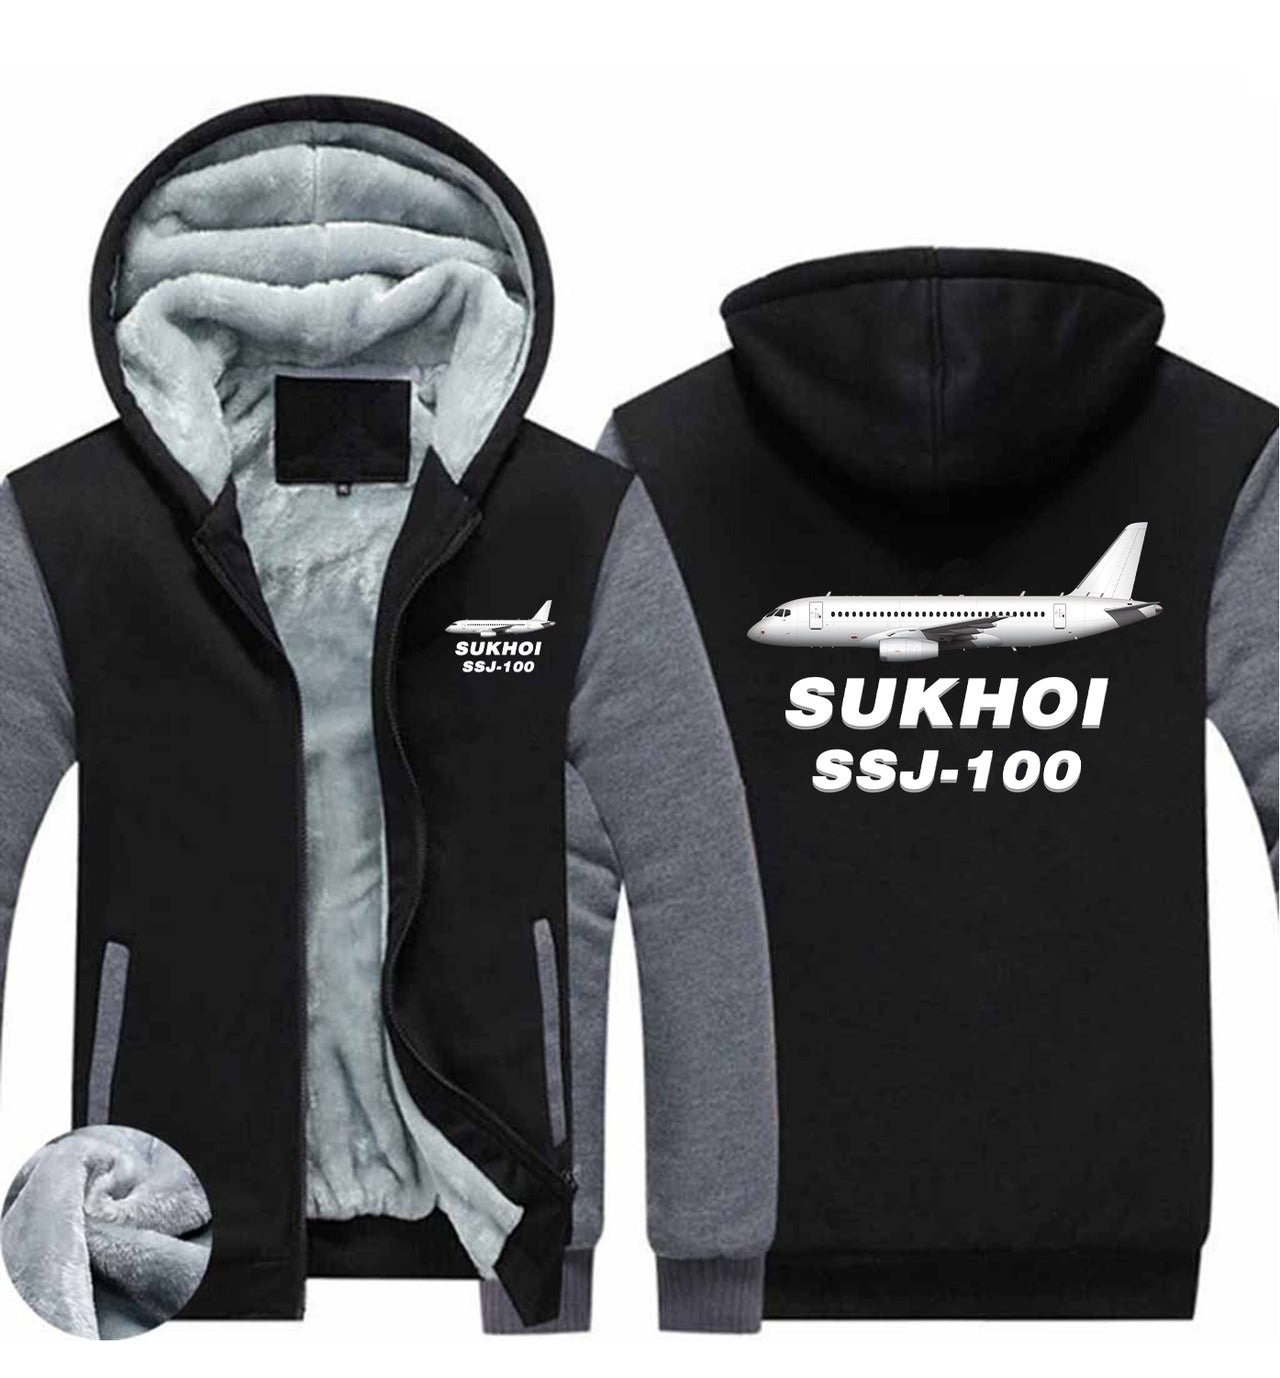 Sukhoi Superjet 100 Designed Zipped Sweatshirts